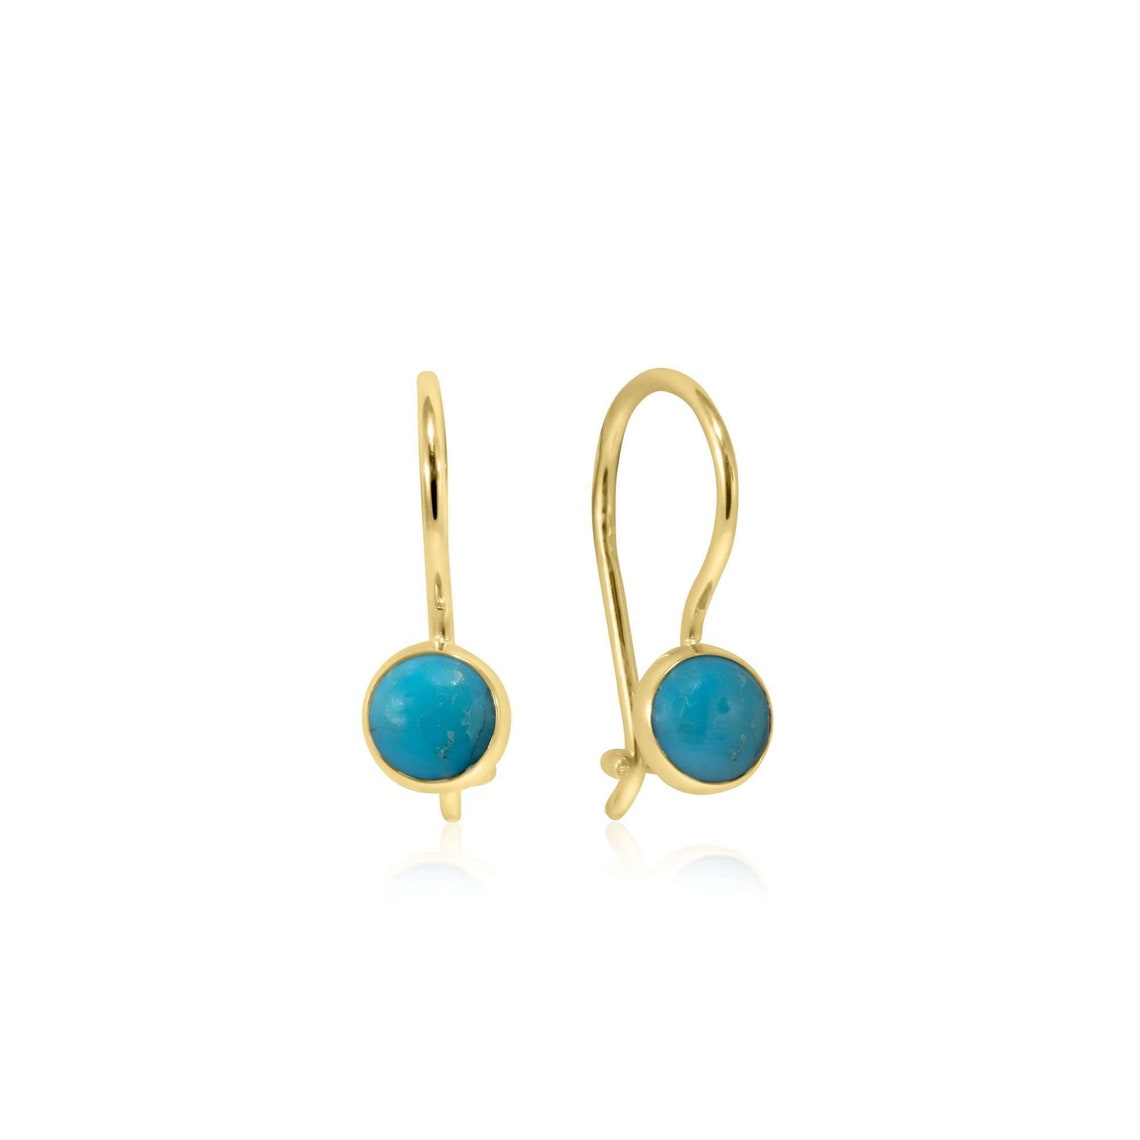 Turquoise Earrings 14K Solid Yellow Gold Drop Earrings - Etsy